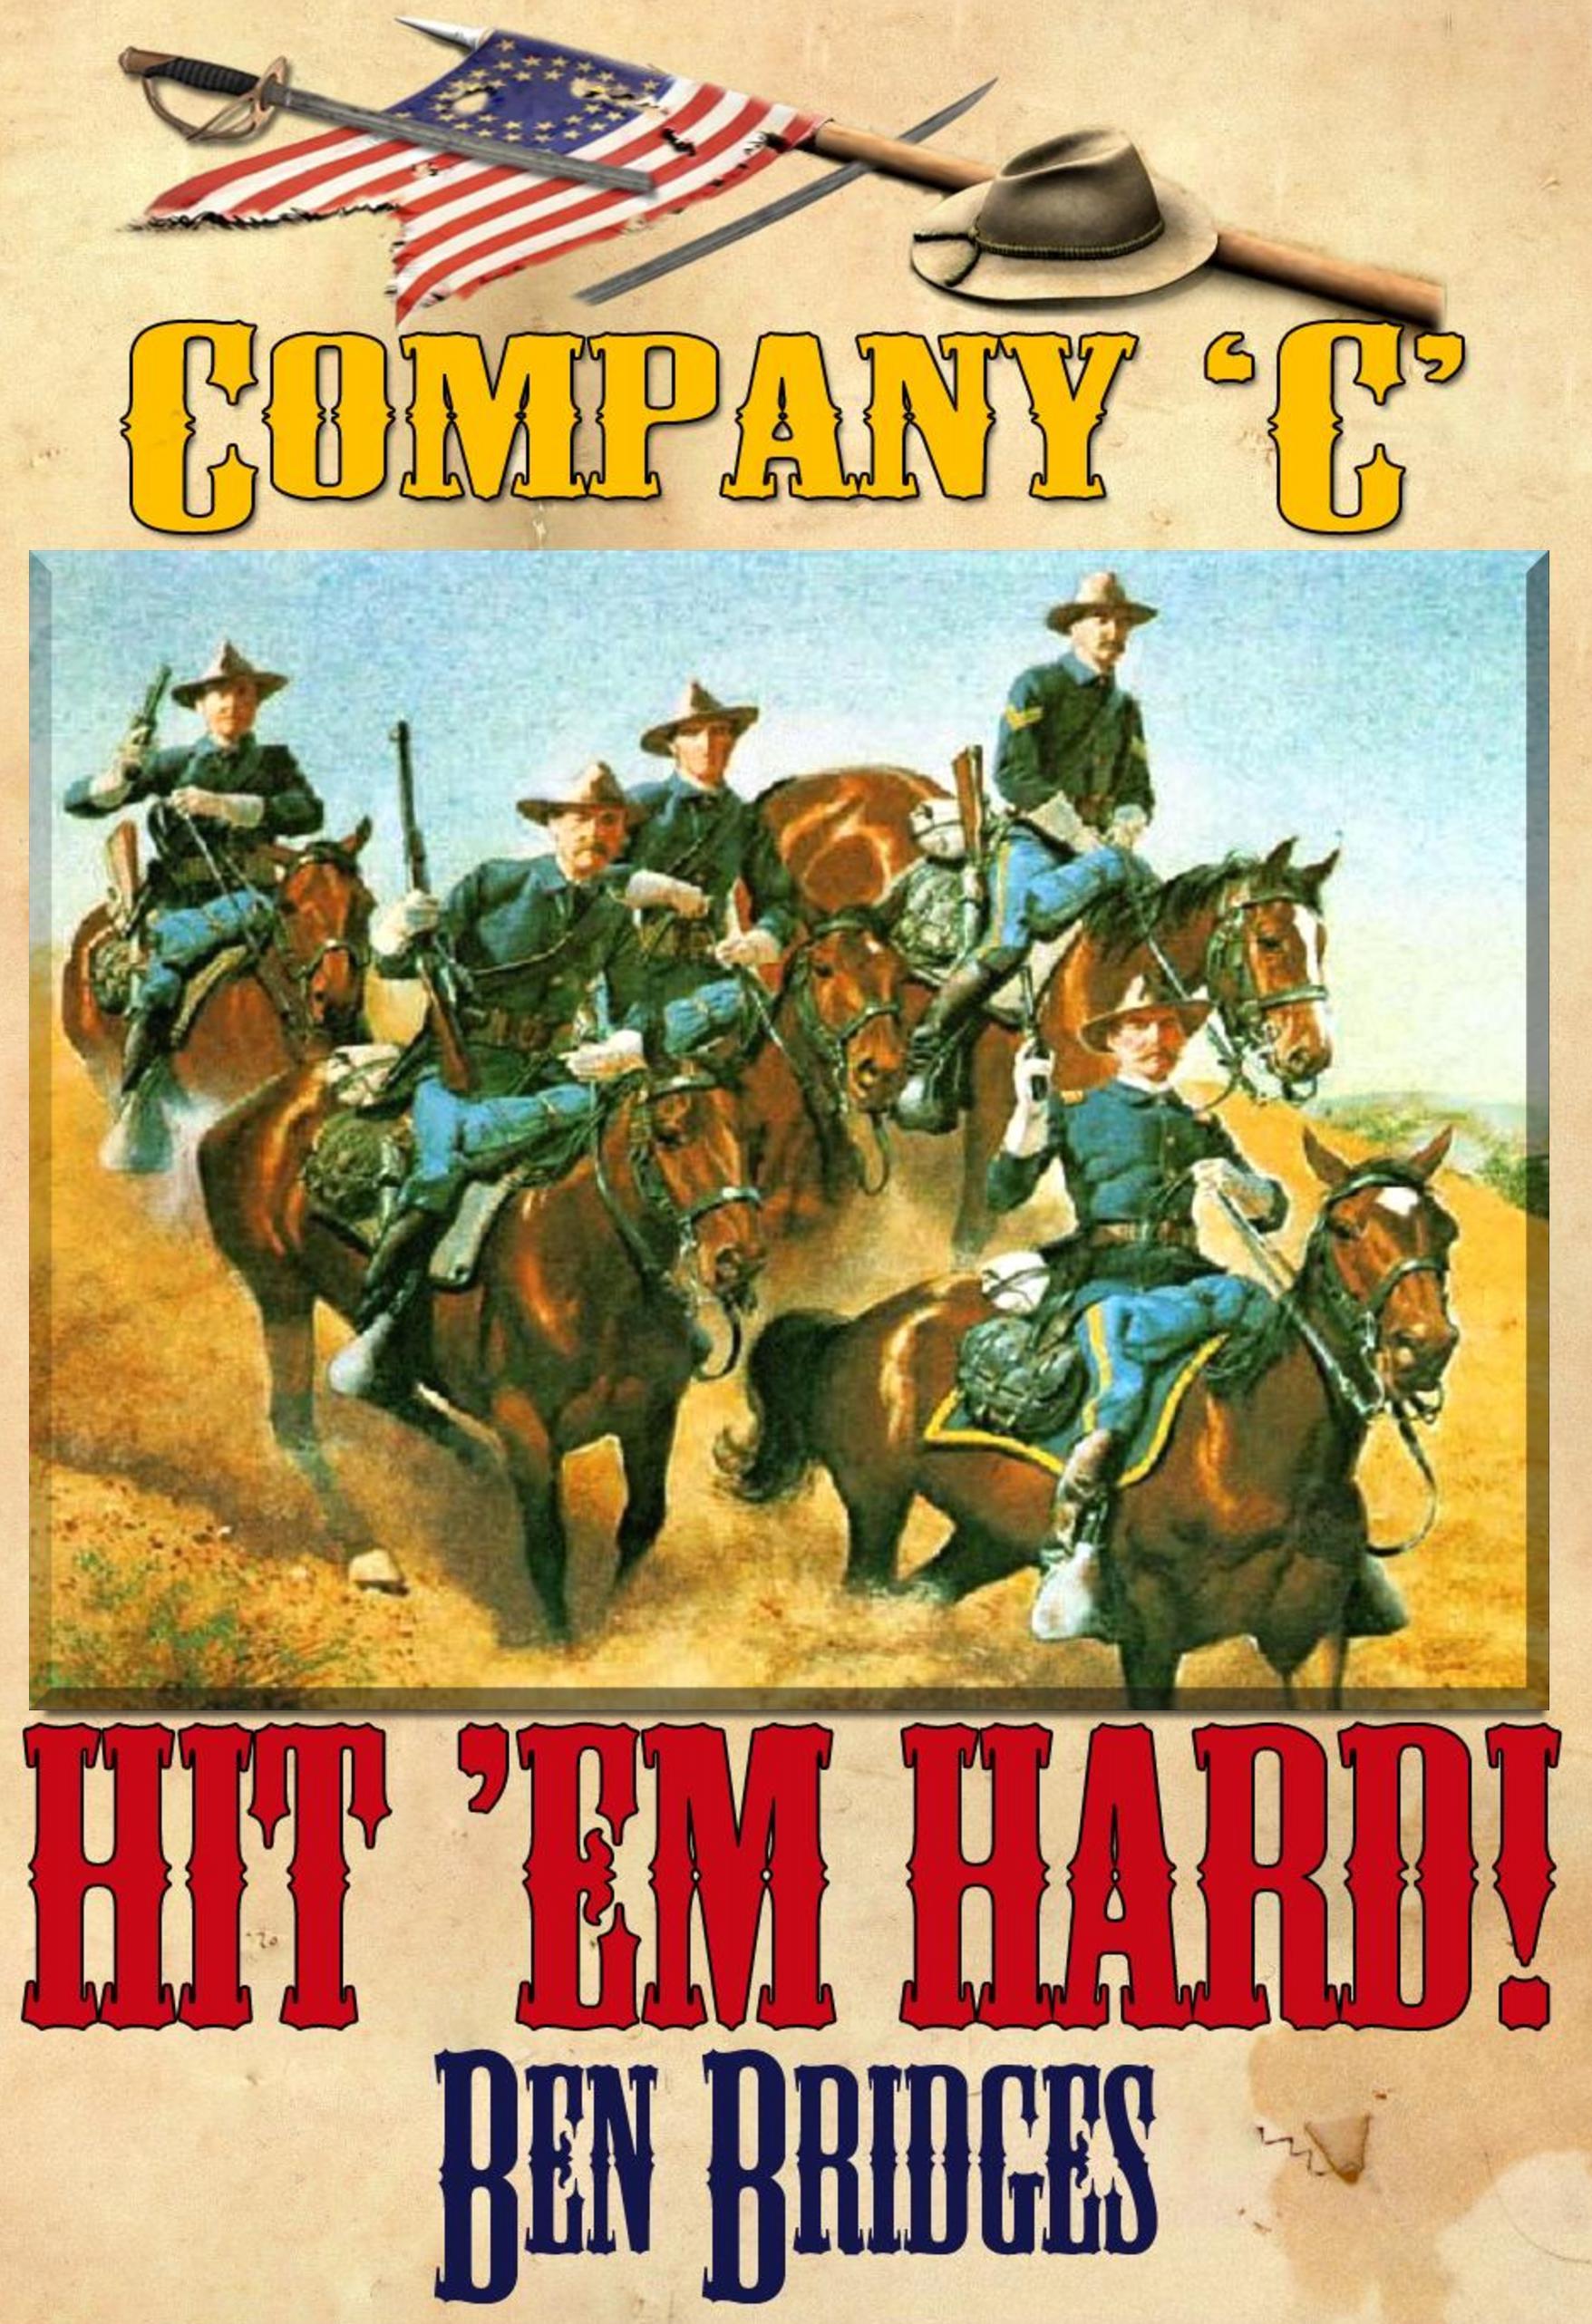 Hit 'em Hard paperback edition by Ben Bridges